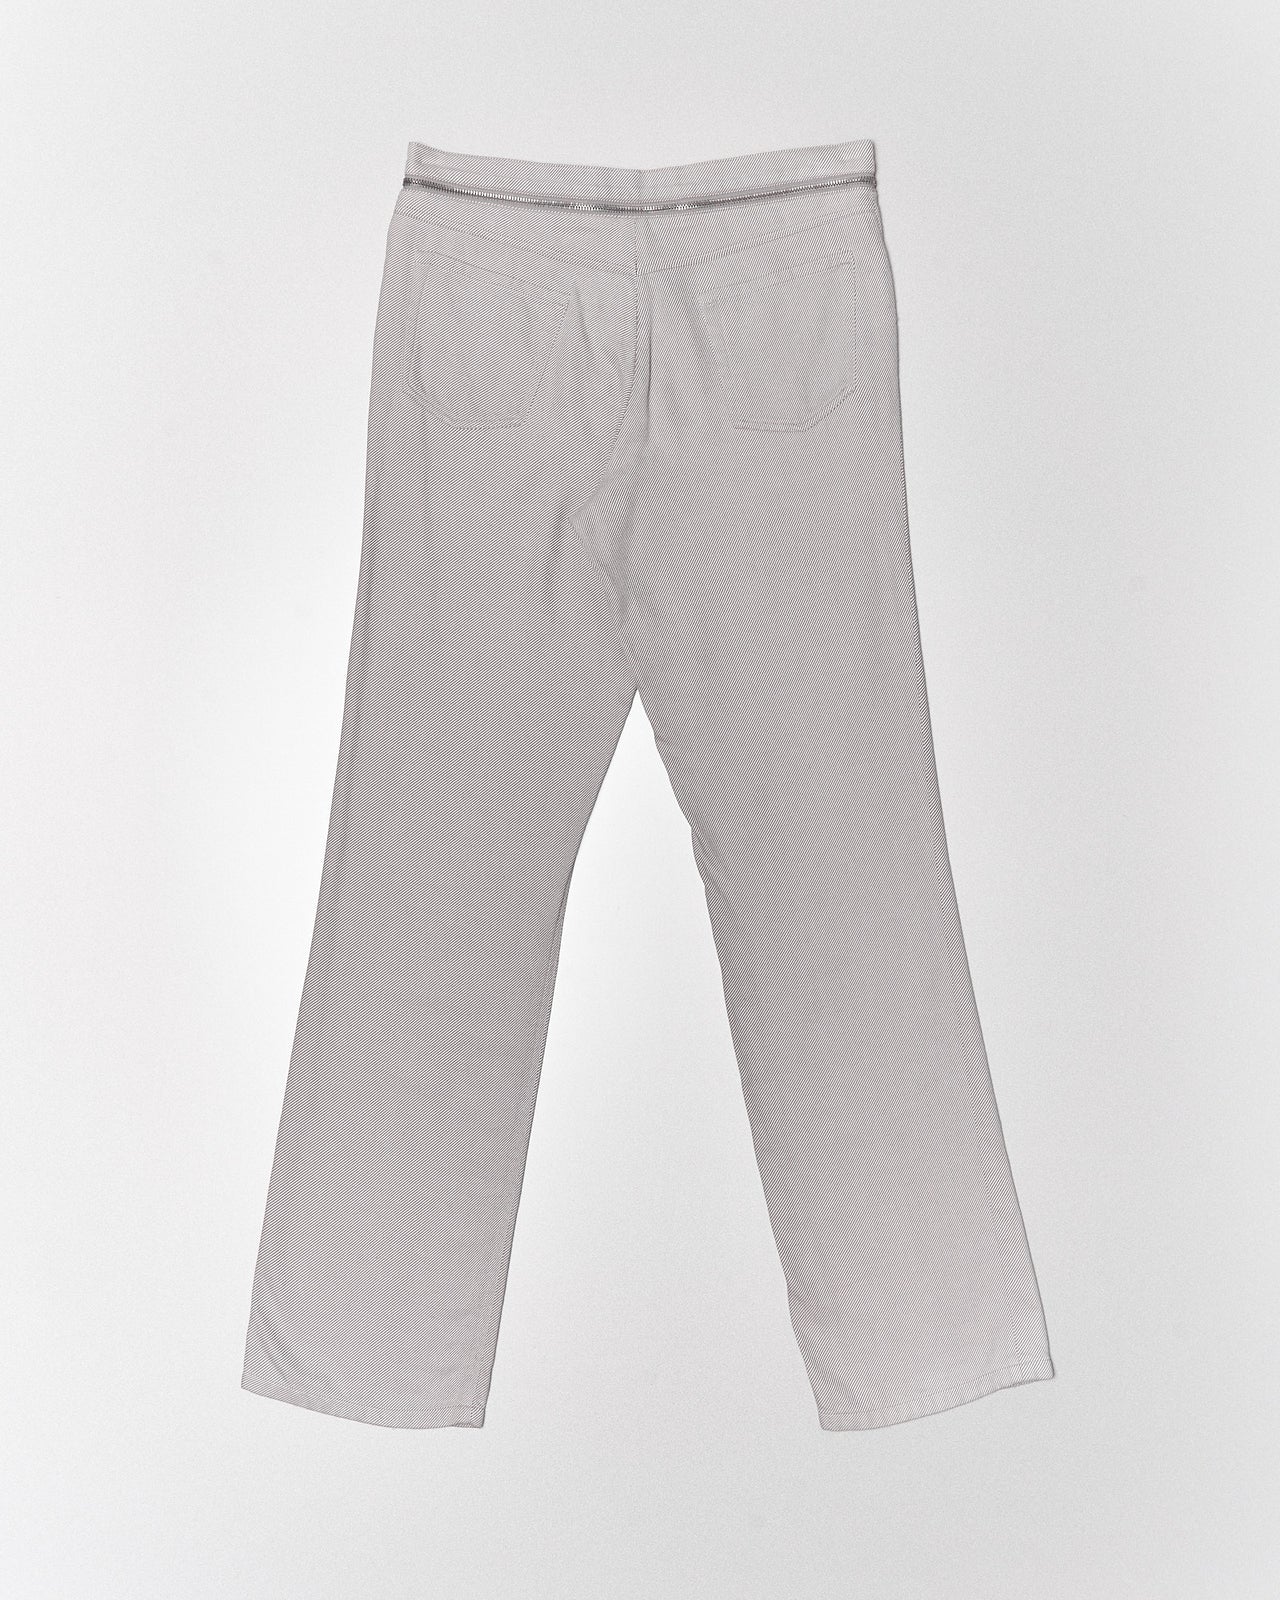 SS 2002 zipper belted pants